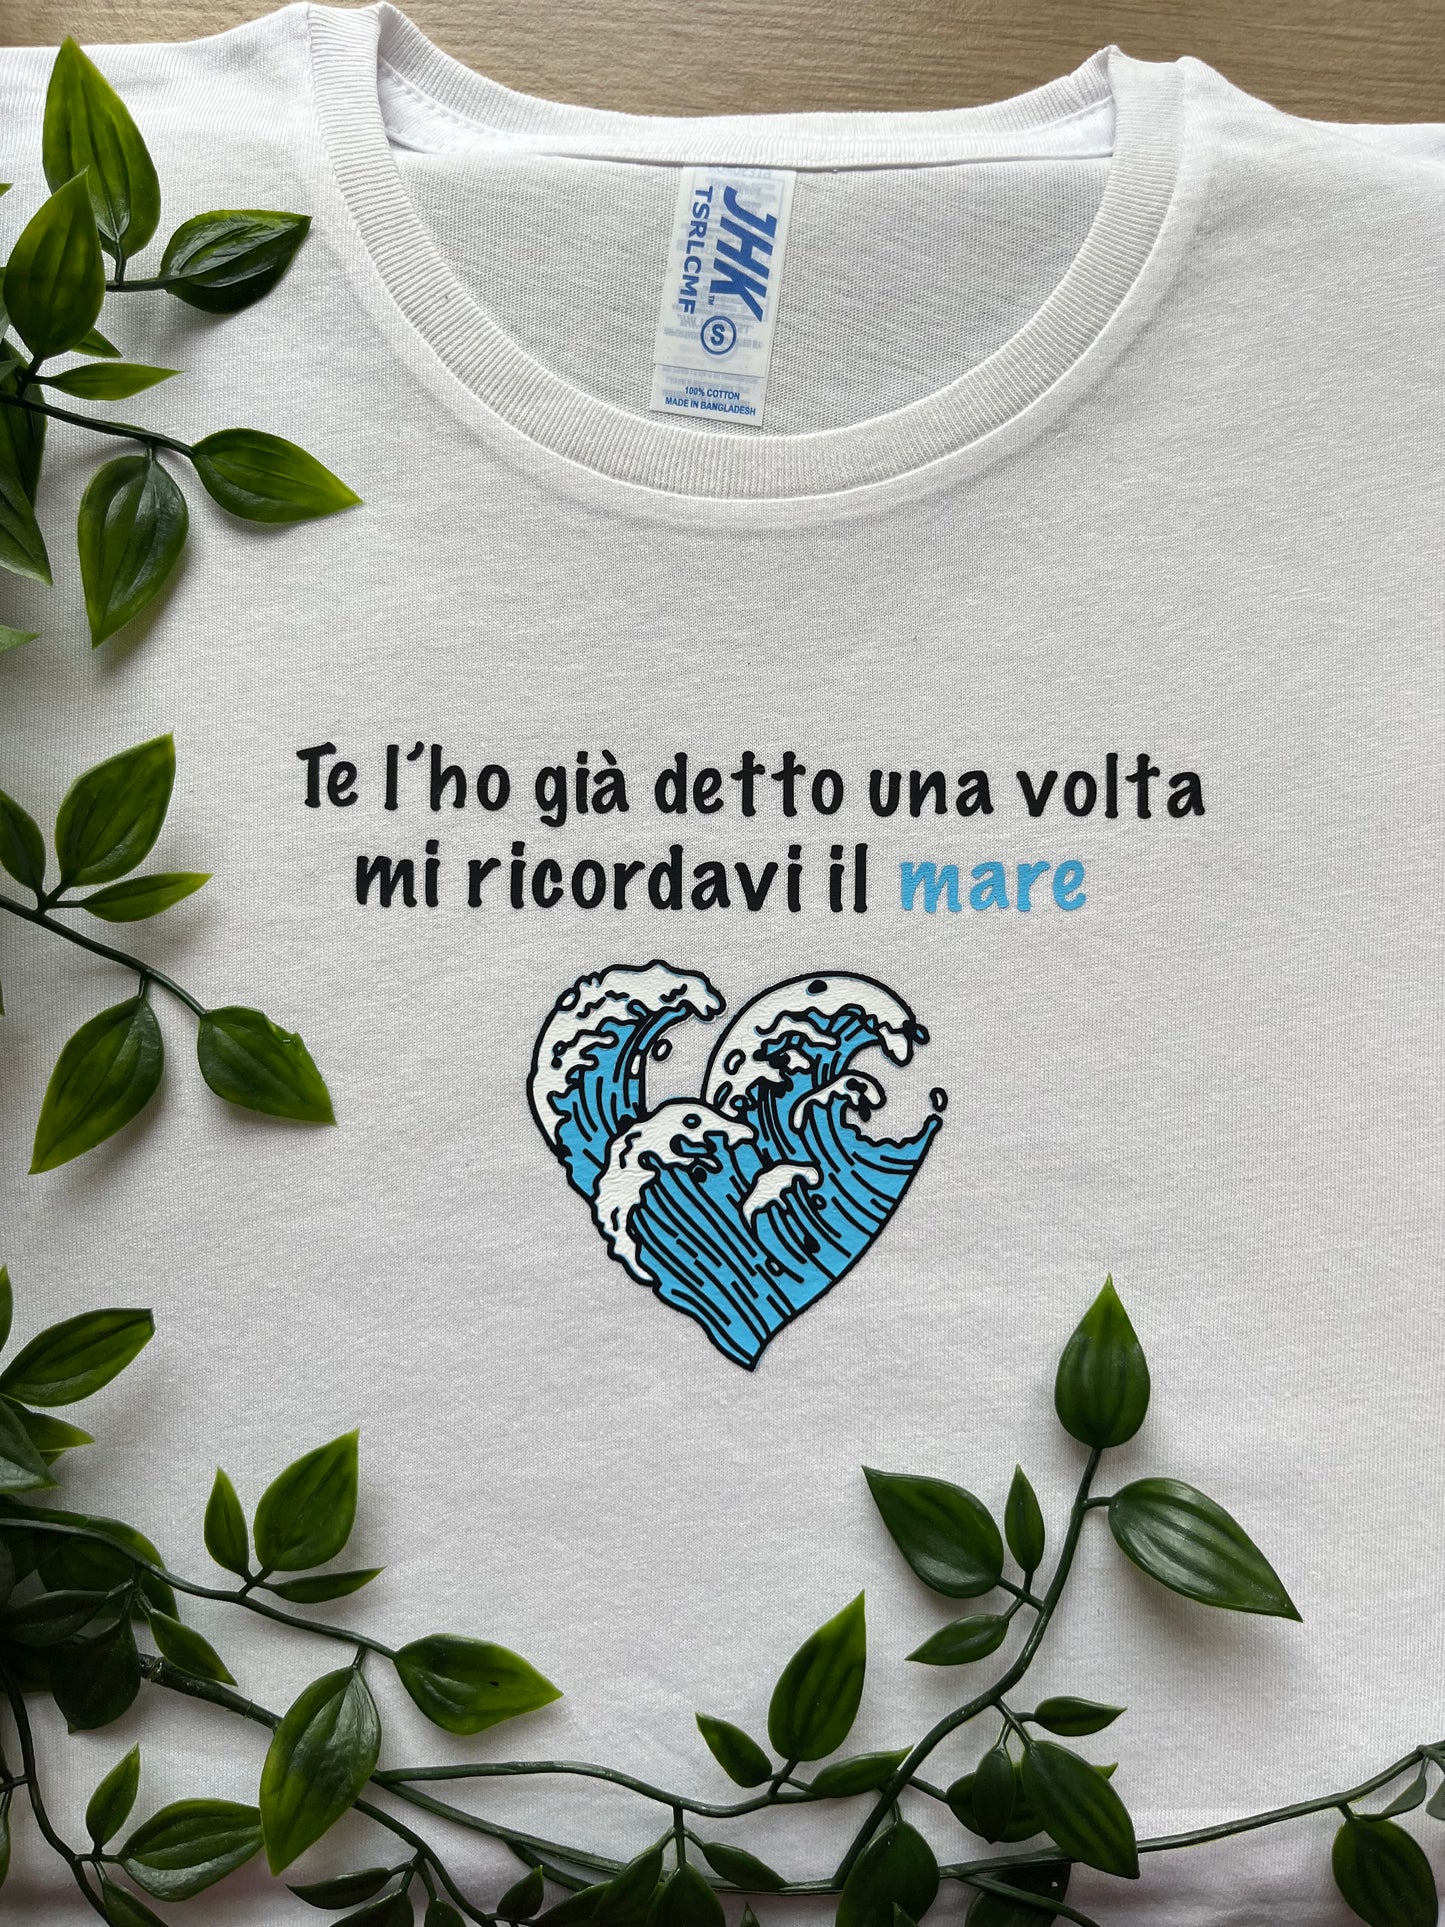 T-shirt - “Mi ricordavi il mare”